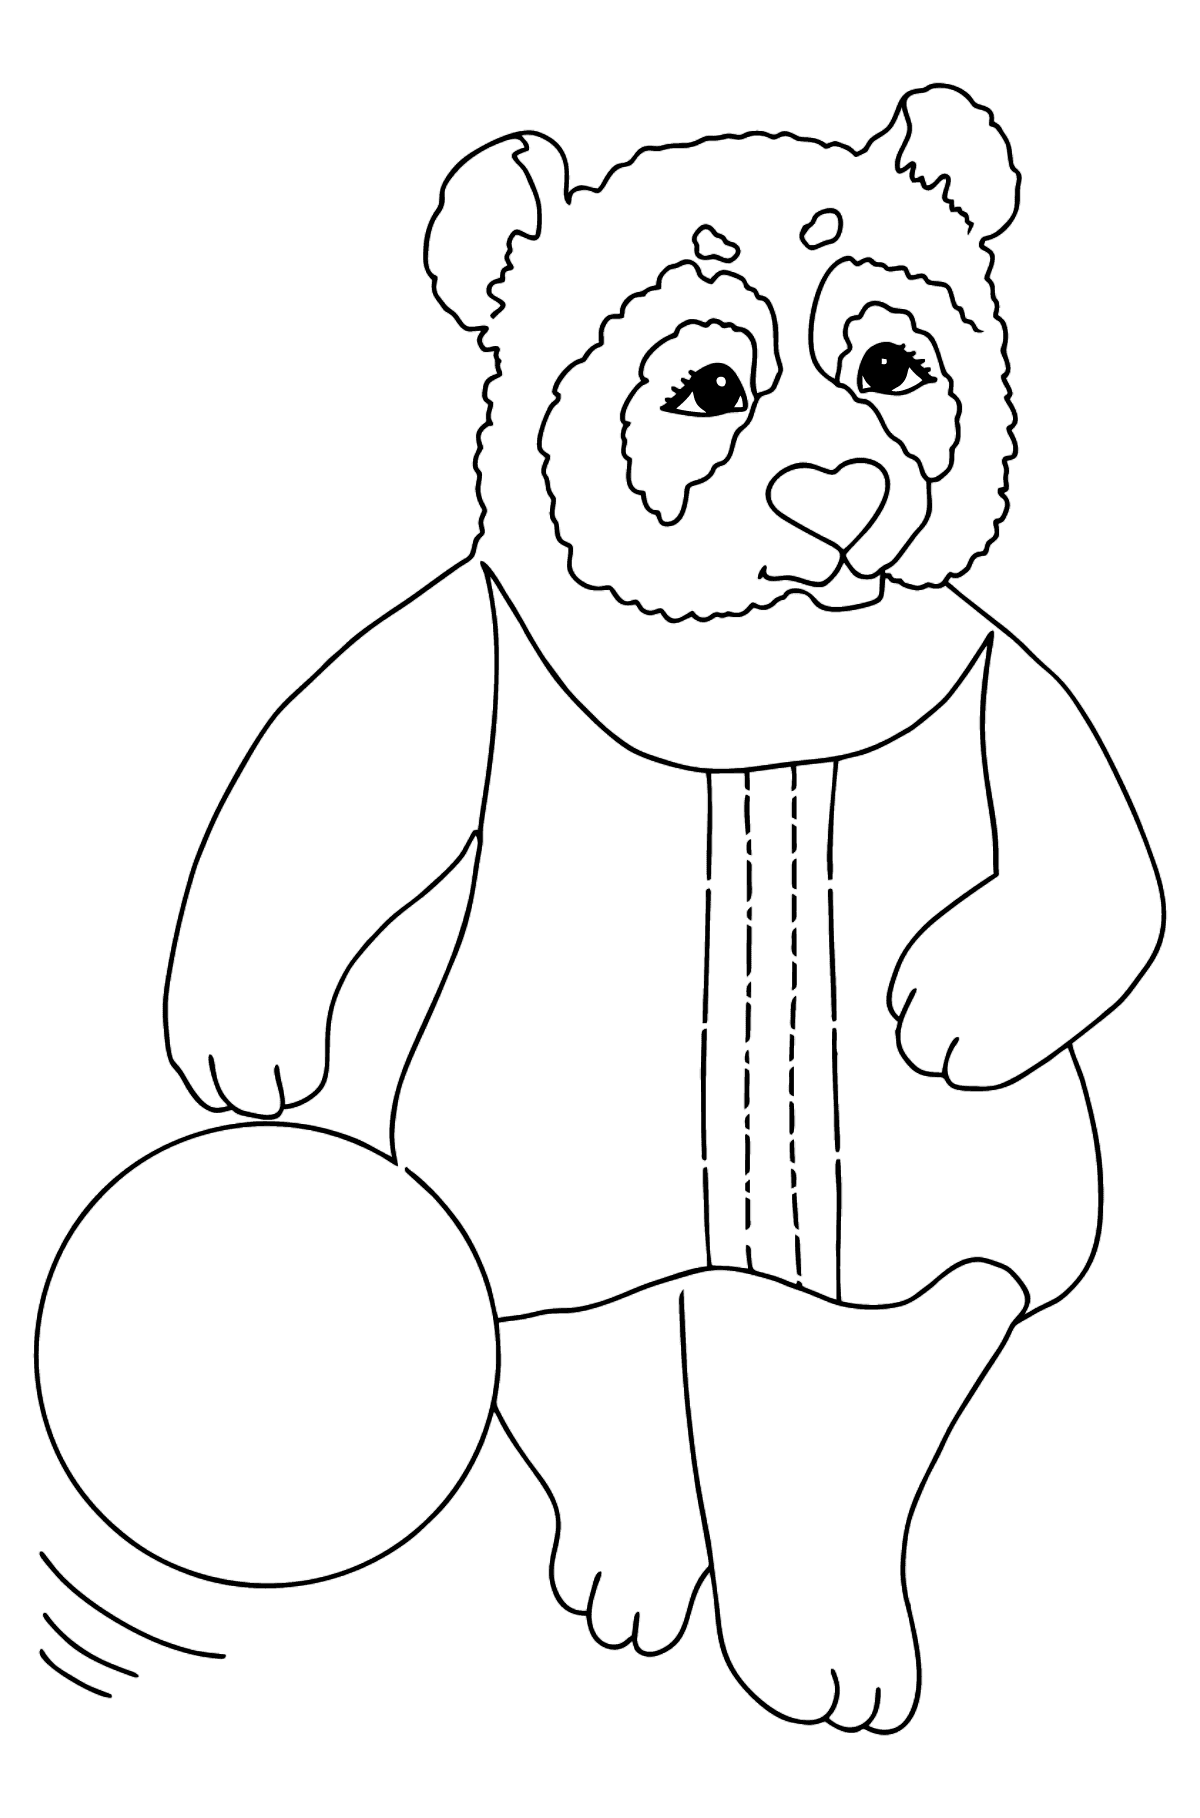 Desen de colorat panda pentru bebelusi (simplu) - Desene de colorat pentru copii